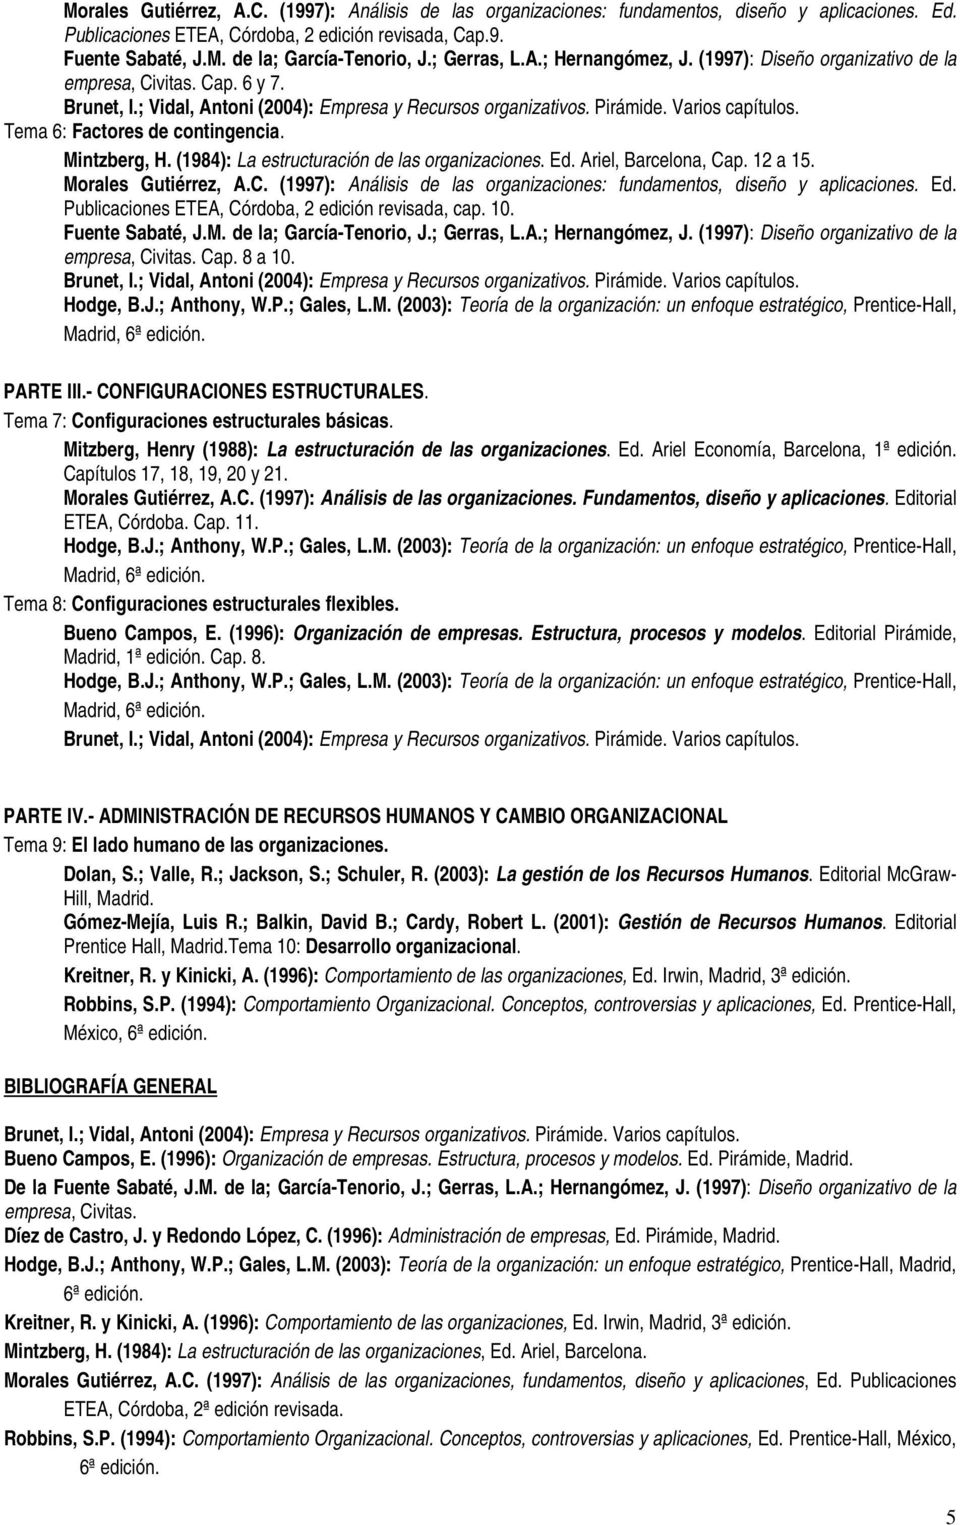 Ariel, Barcelona, Cap. 12 a 15. Morales Gutiérrez, A.C. (1997): Análisis de las organizaciones: fundamentos, diseño y aplicaciones. Ed. Publicaciones ETEA, Córdoba, 2 edición revisada, cap. 10.